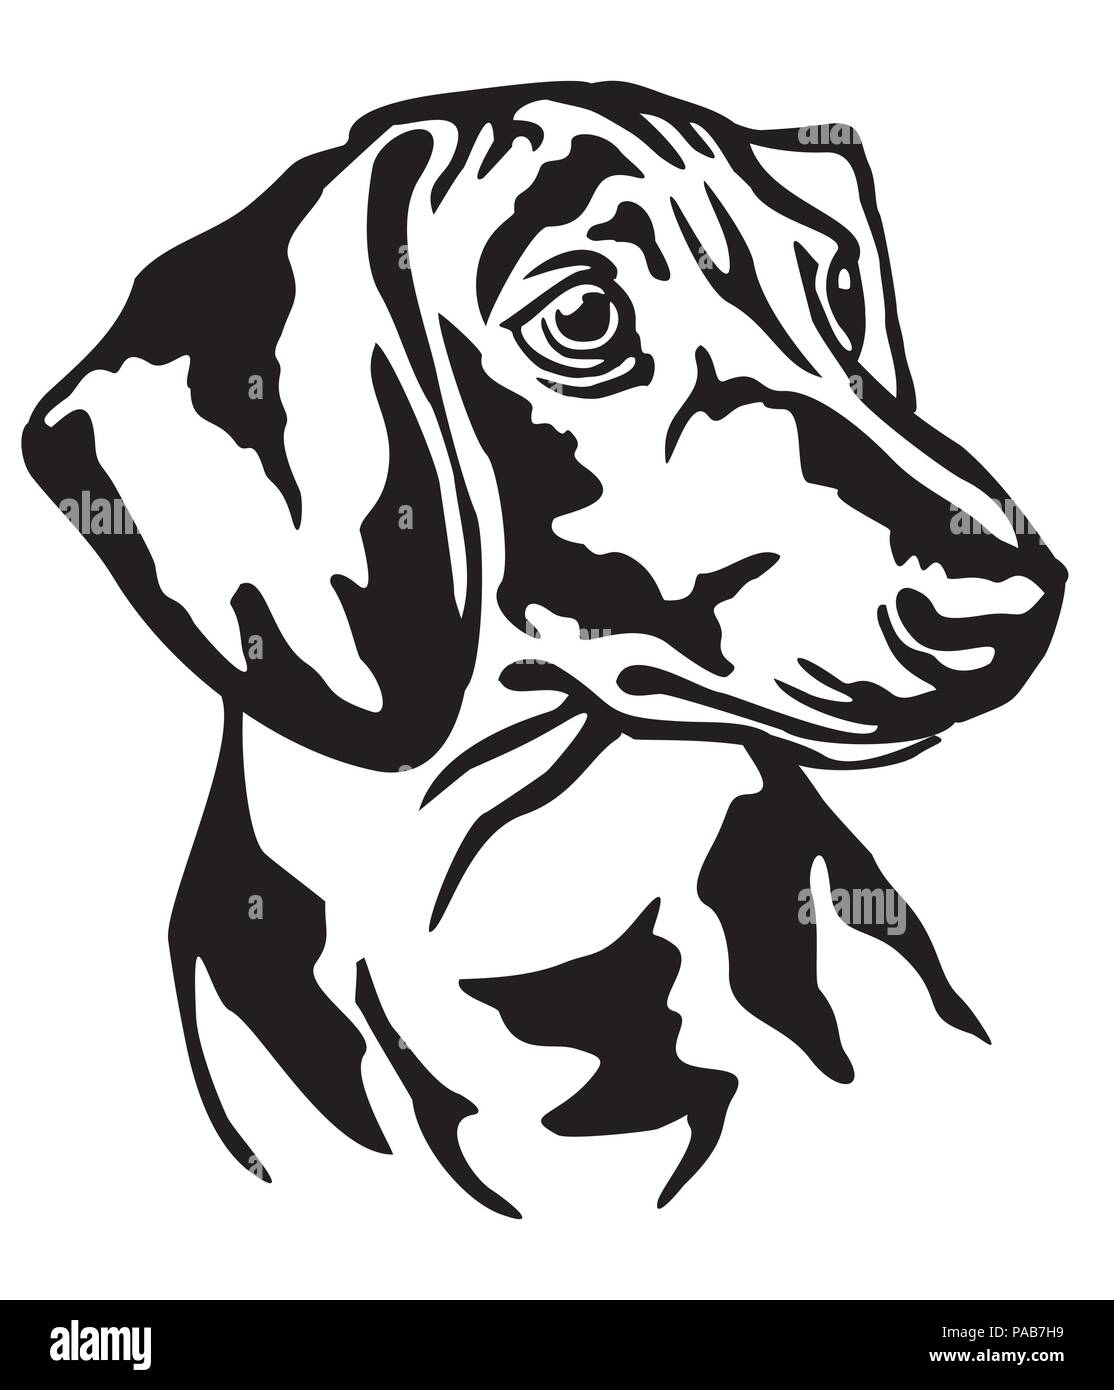 Dekorative Portrait von Hund Dackel, Vektor isoliert Abbildung in schwarz auf weißem Hintergrund Stock Vektor